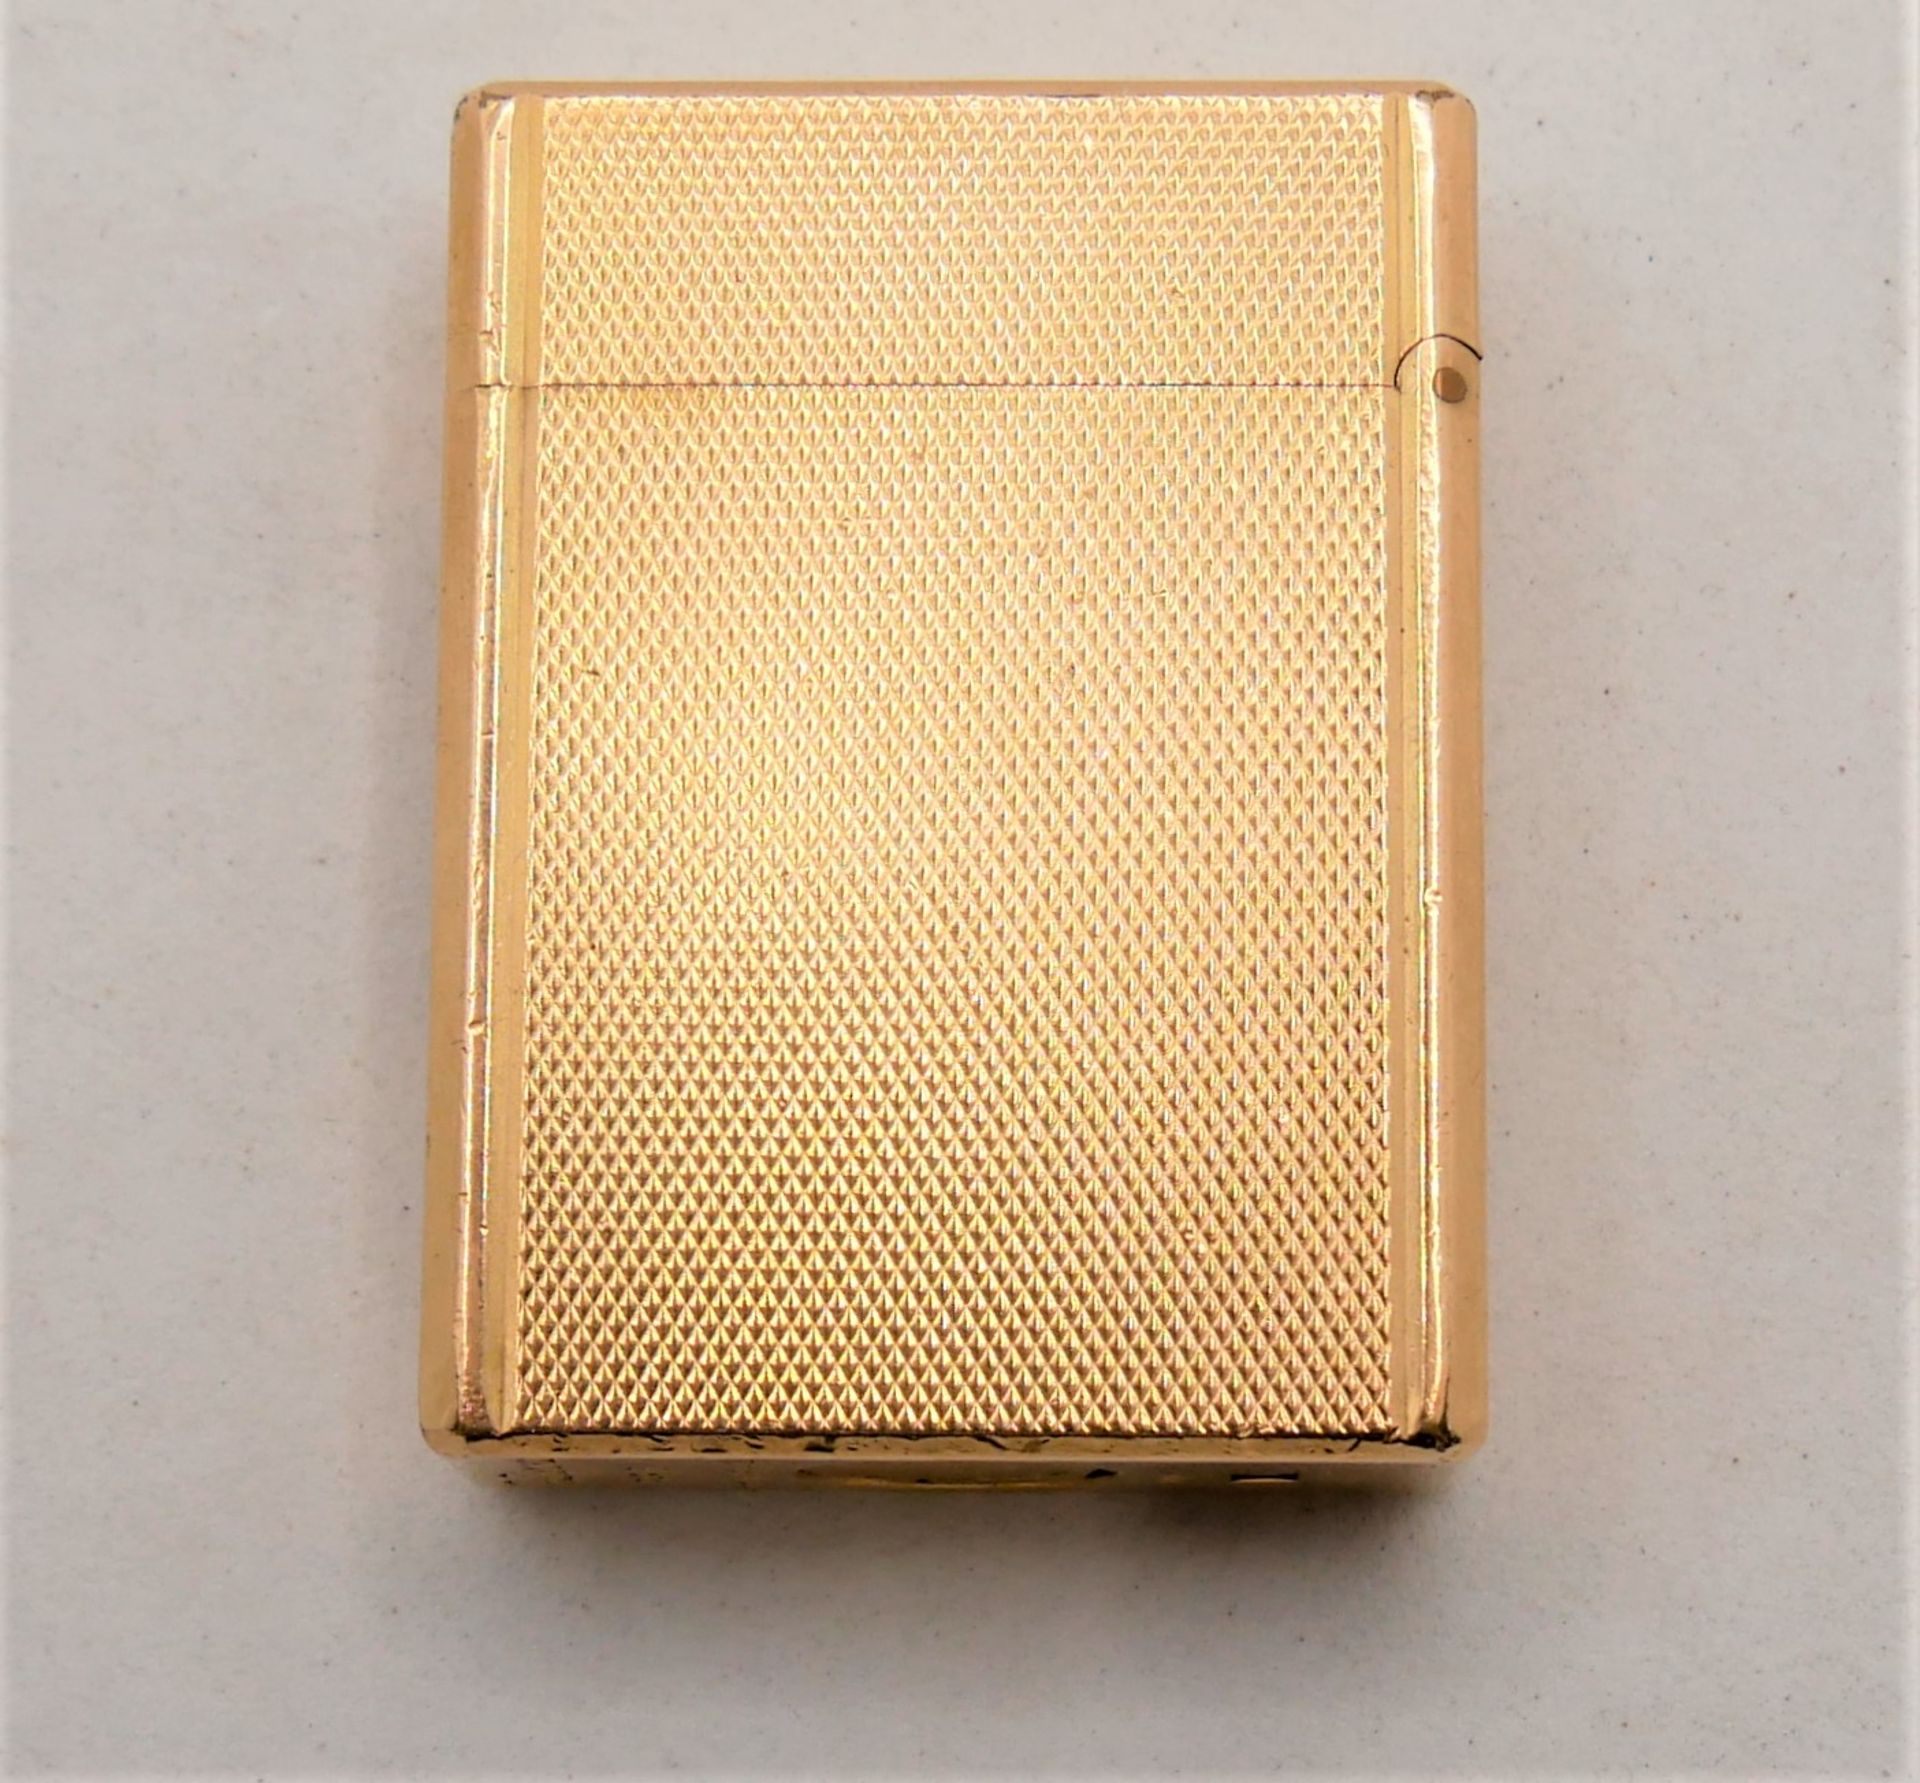 Feuerzeug S.T.Dupont Paris, Made in France, Nr. 20 u, vergoldet. Funktion geprüft. Gebrauchter - Image 2 of 4